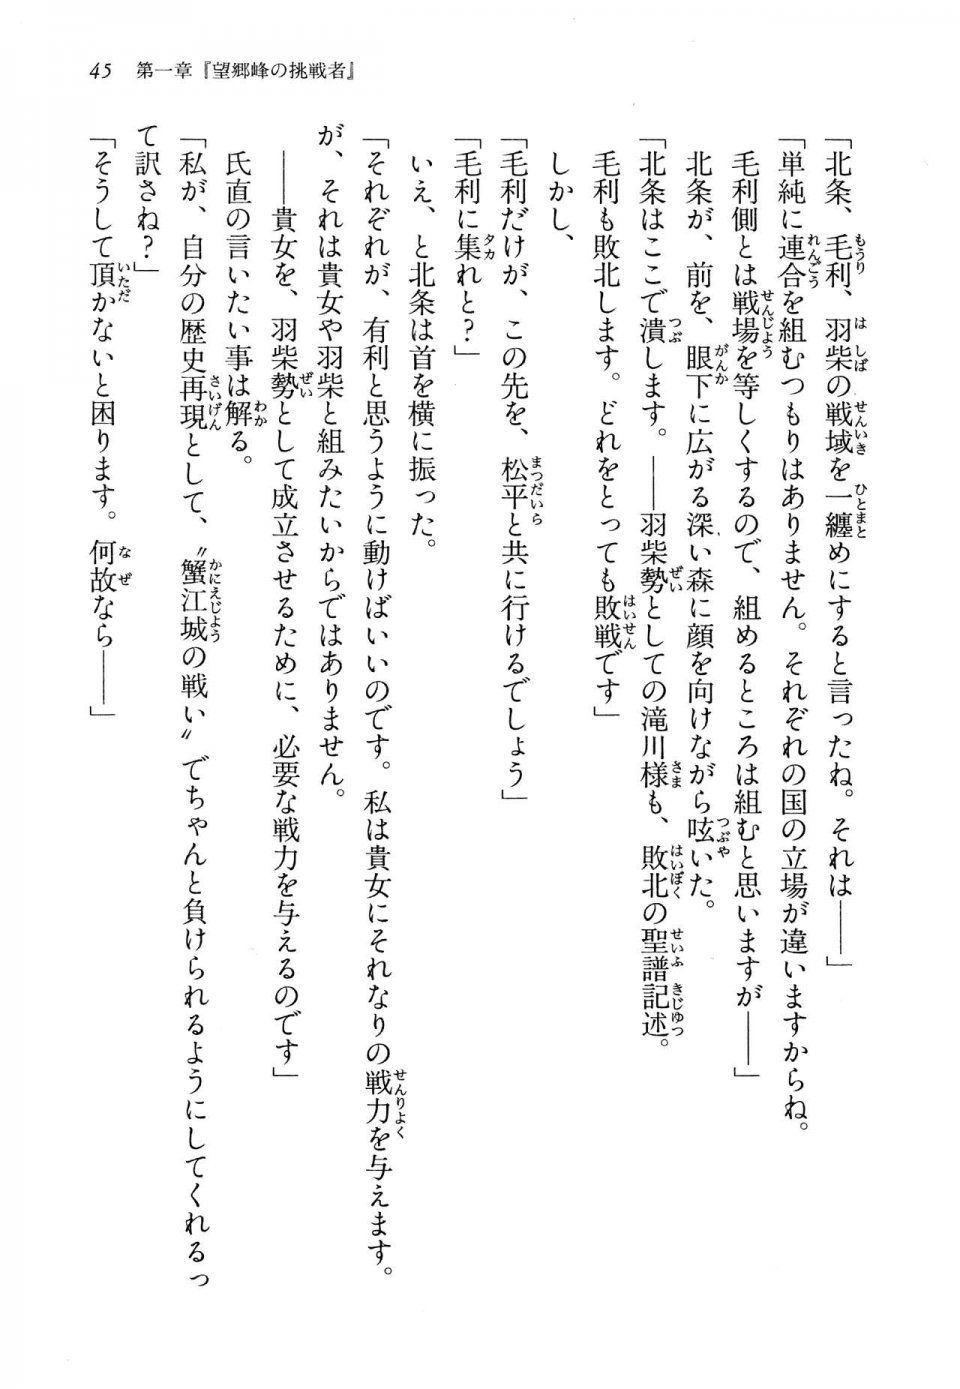 Kyoukai Senjou no Horizon LN Vol 13(6A) - Photo #45